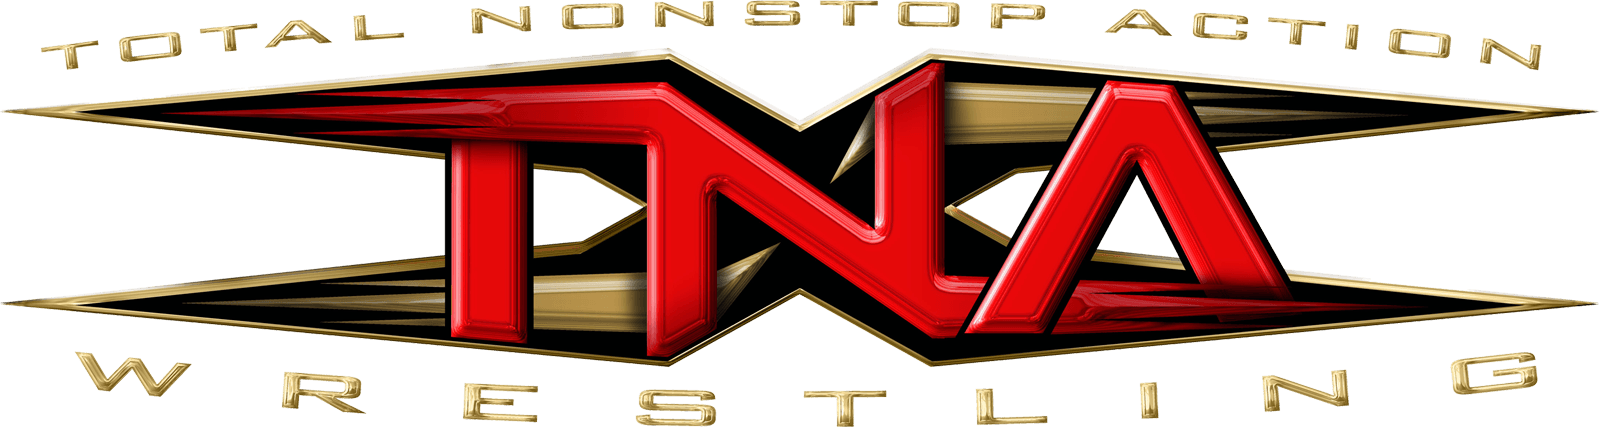 TNA Logo - Impact Wrestling (company) | Logopedia | FANDOM powered by Wikia